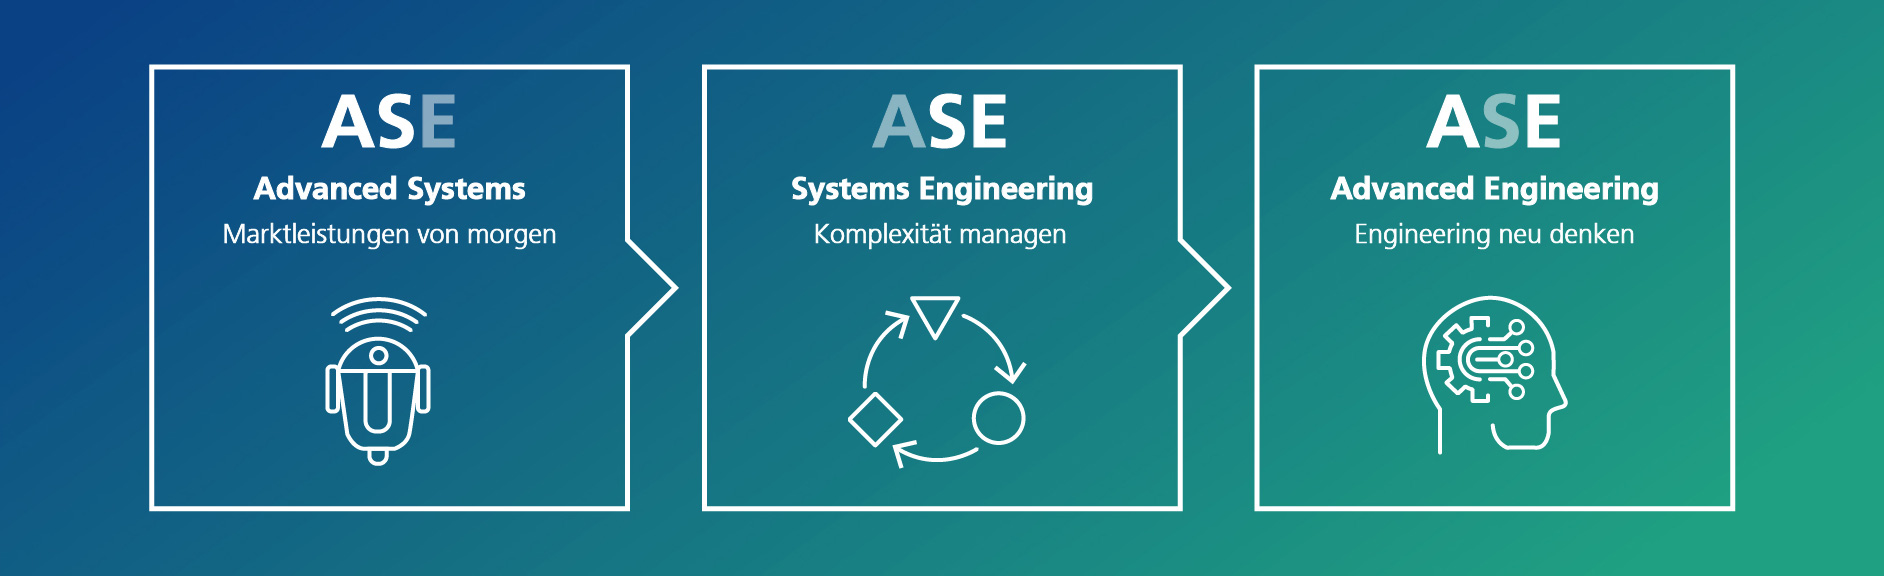 Grafische Darstellung der Handlungsfelder des Advanced Systems Engineering